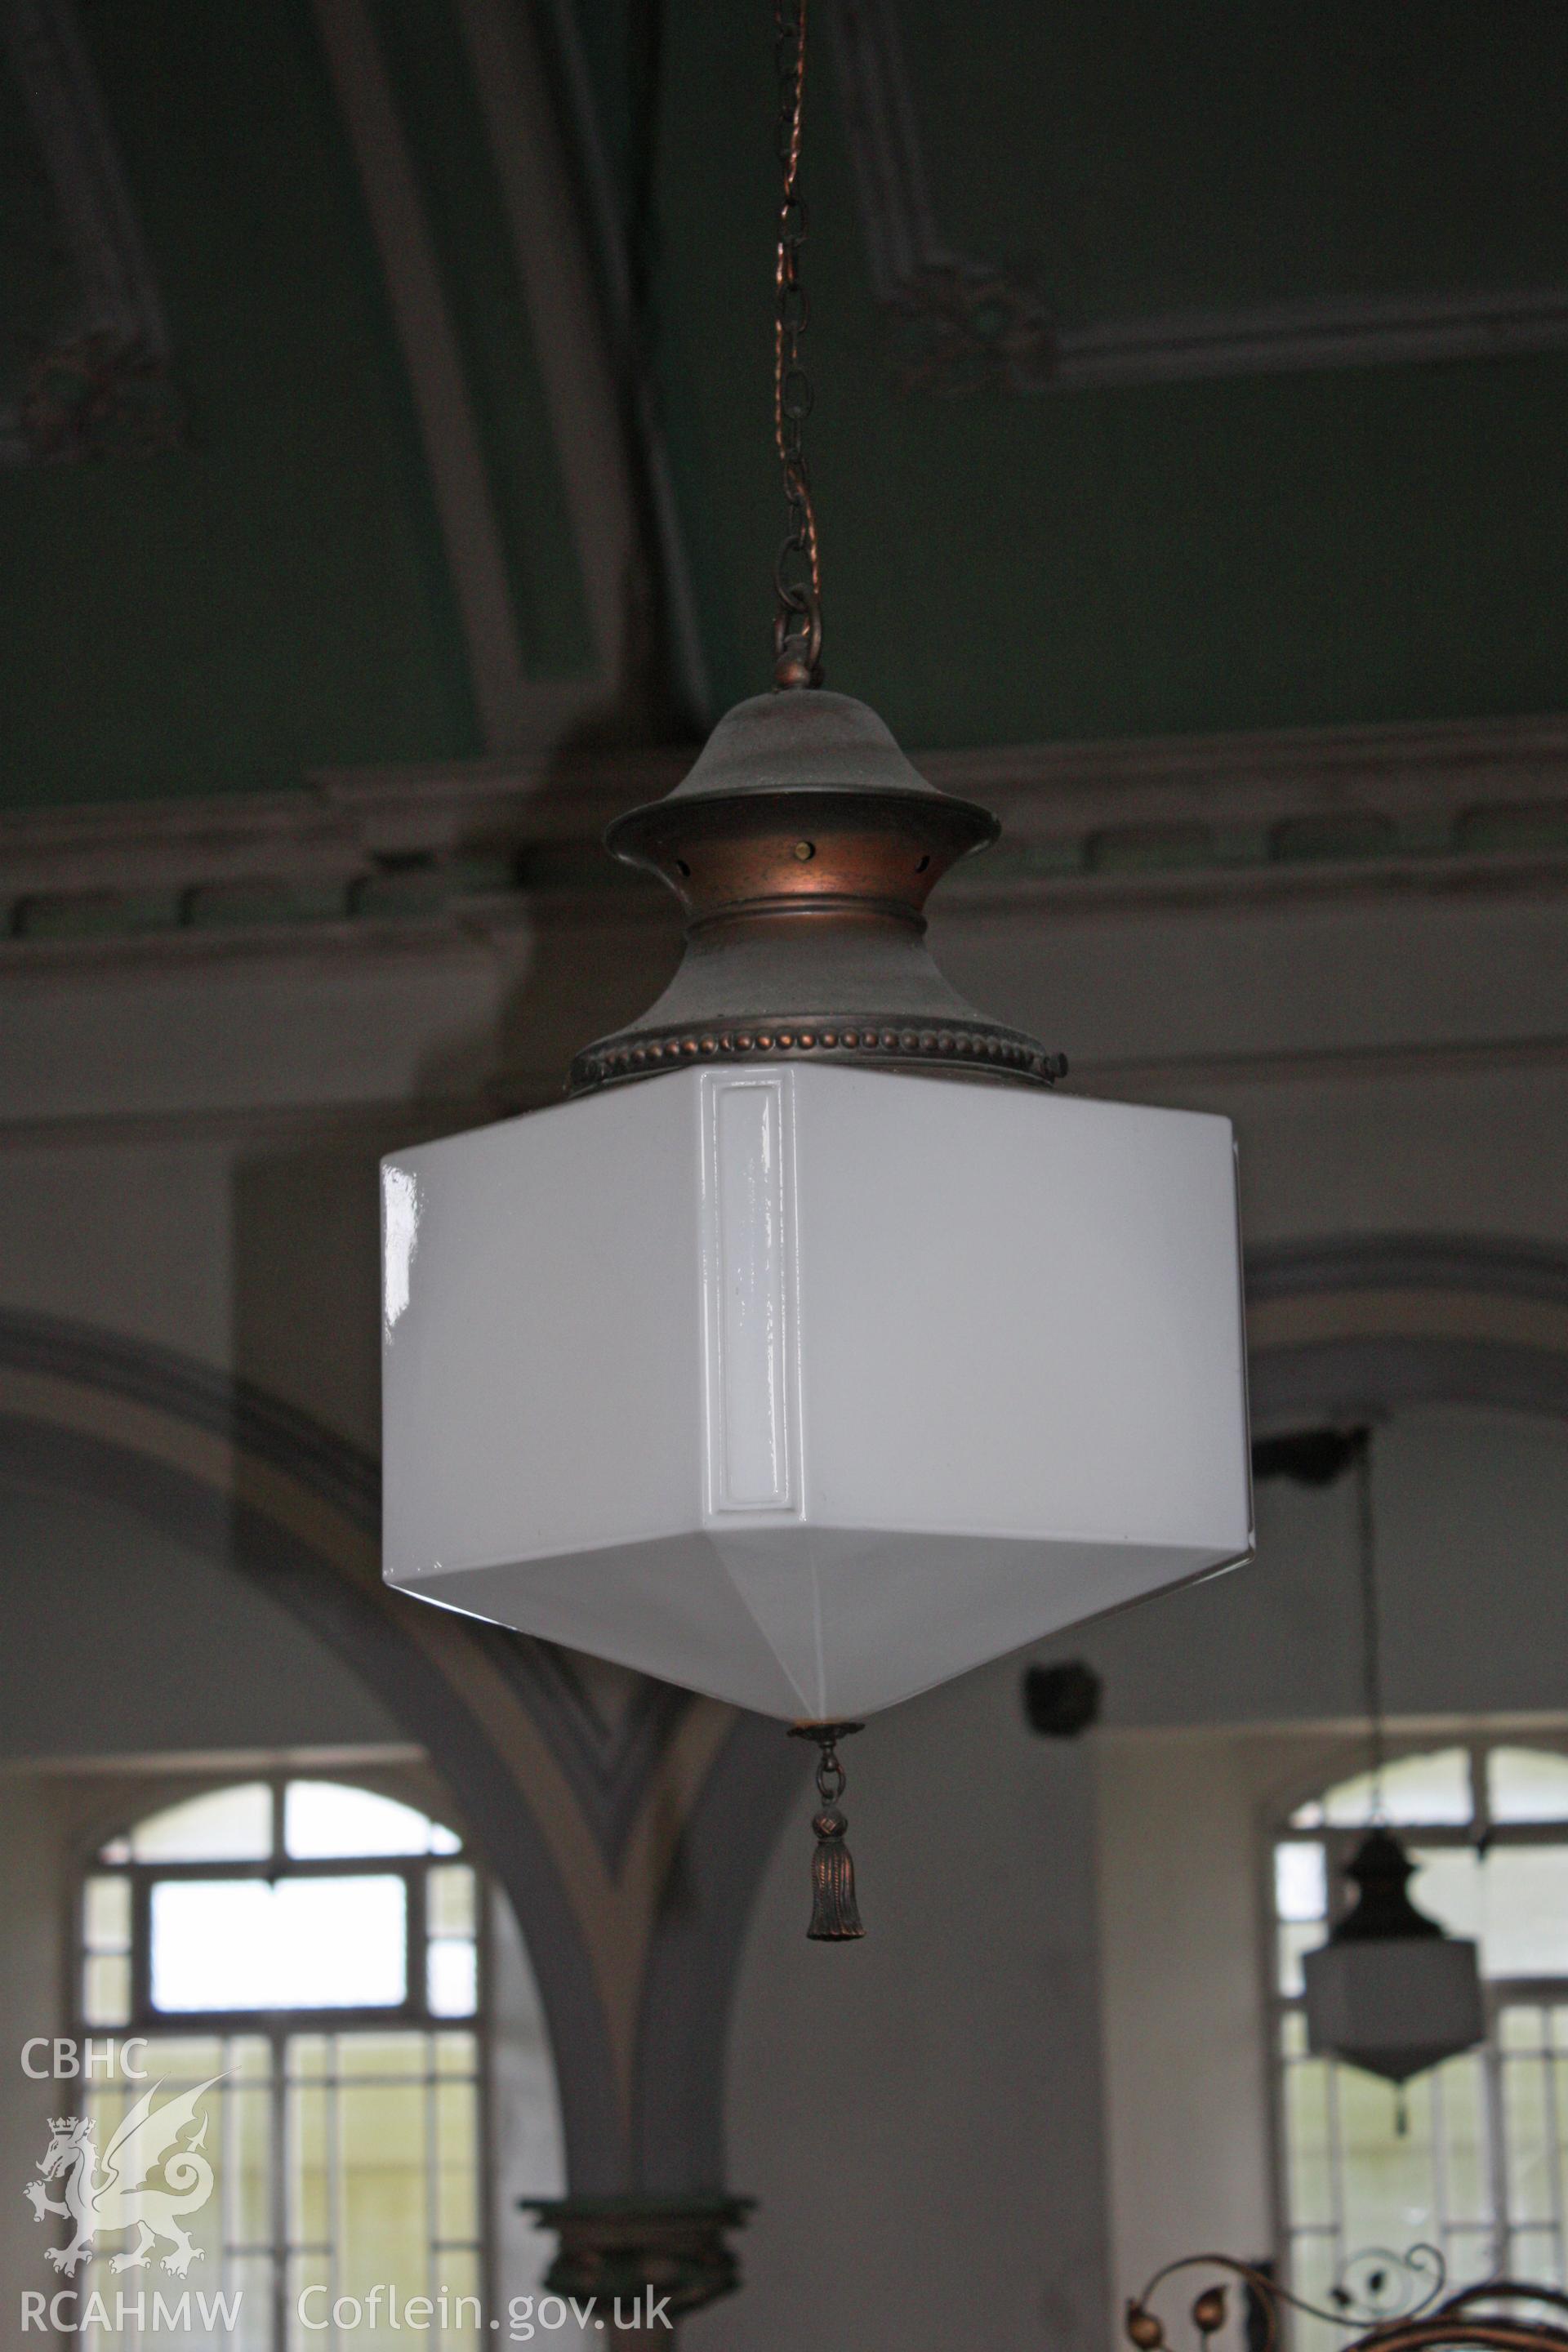 Detail of ceiling light